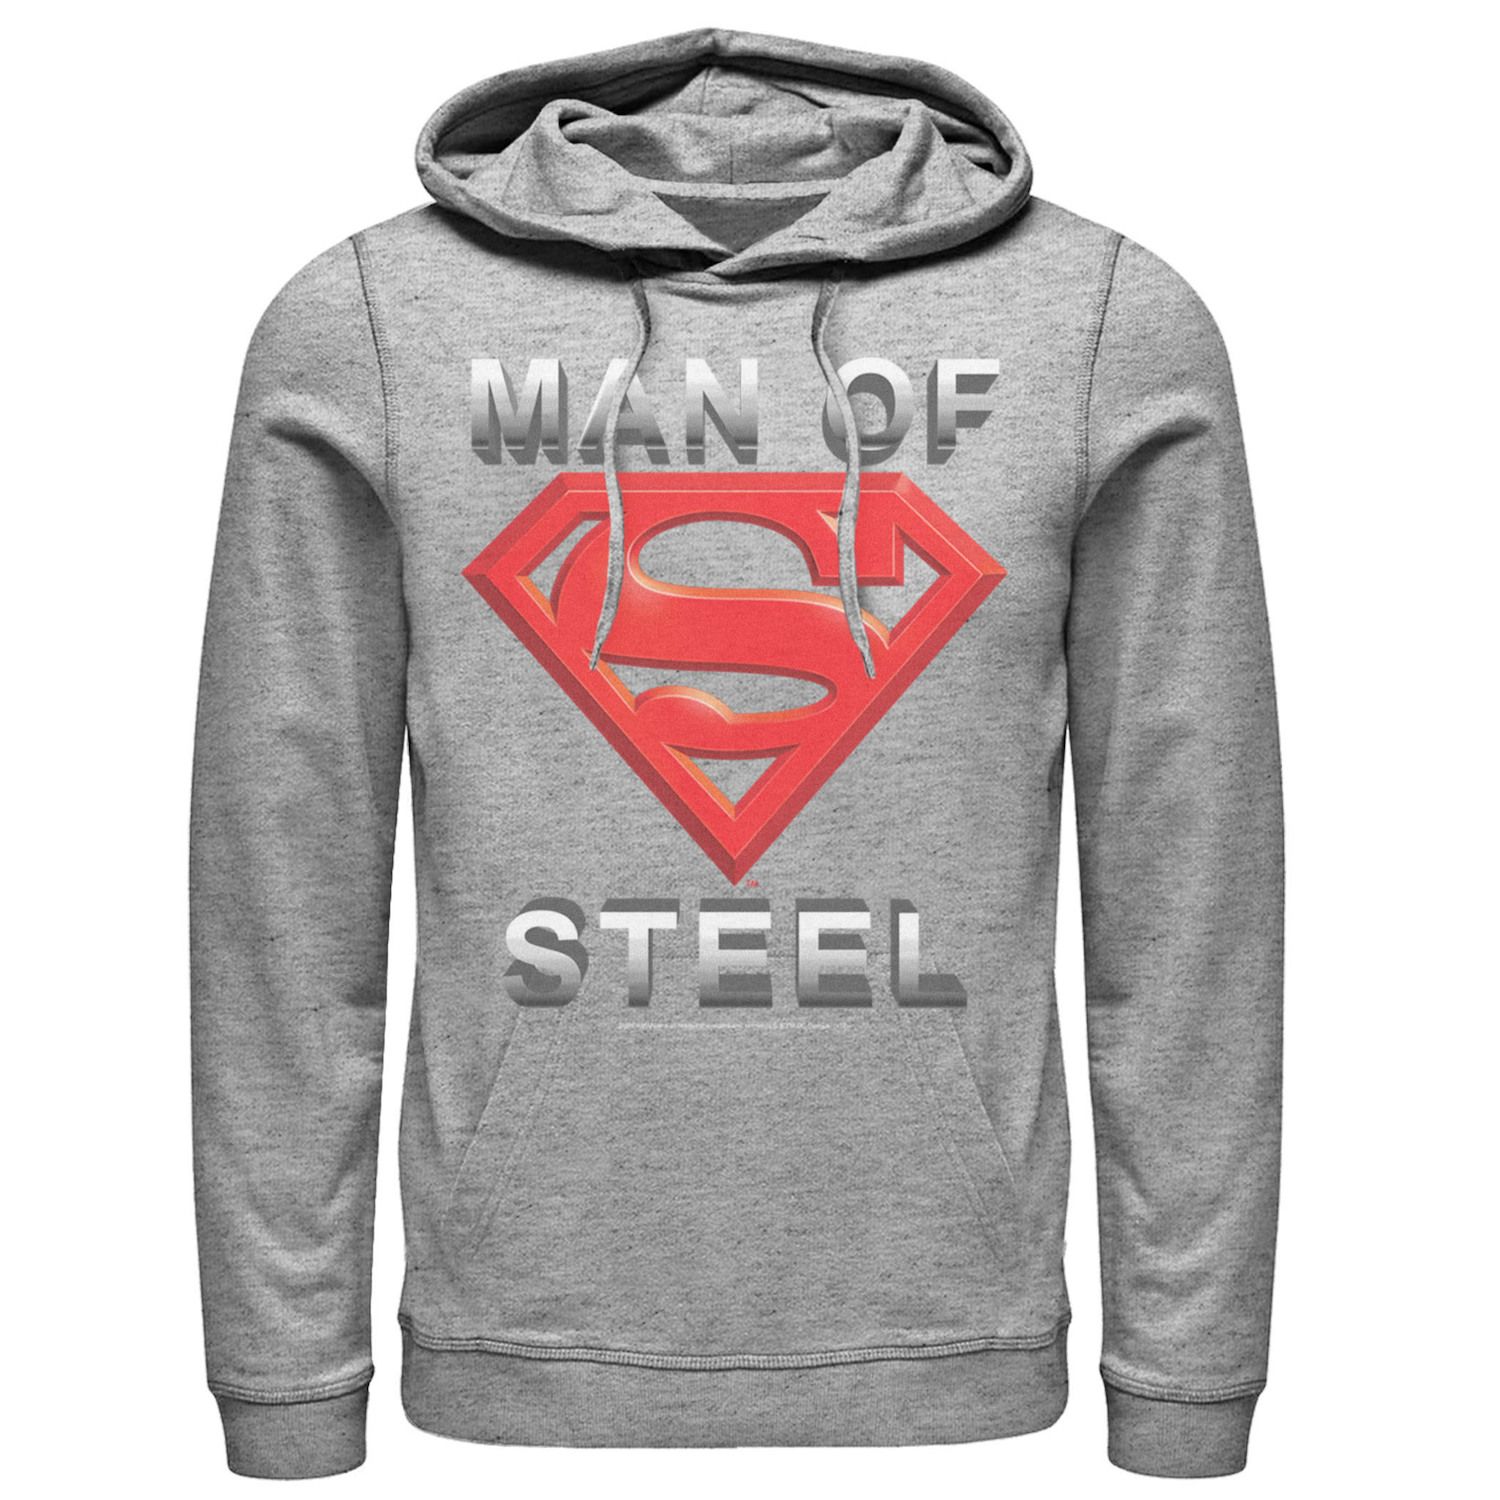 man of steel hoodie